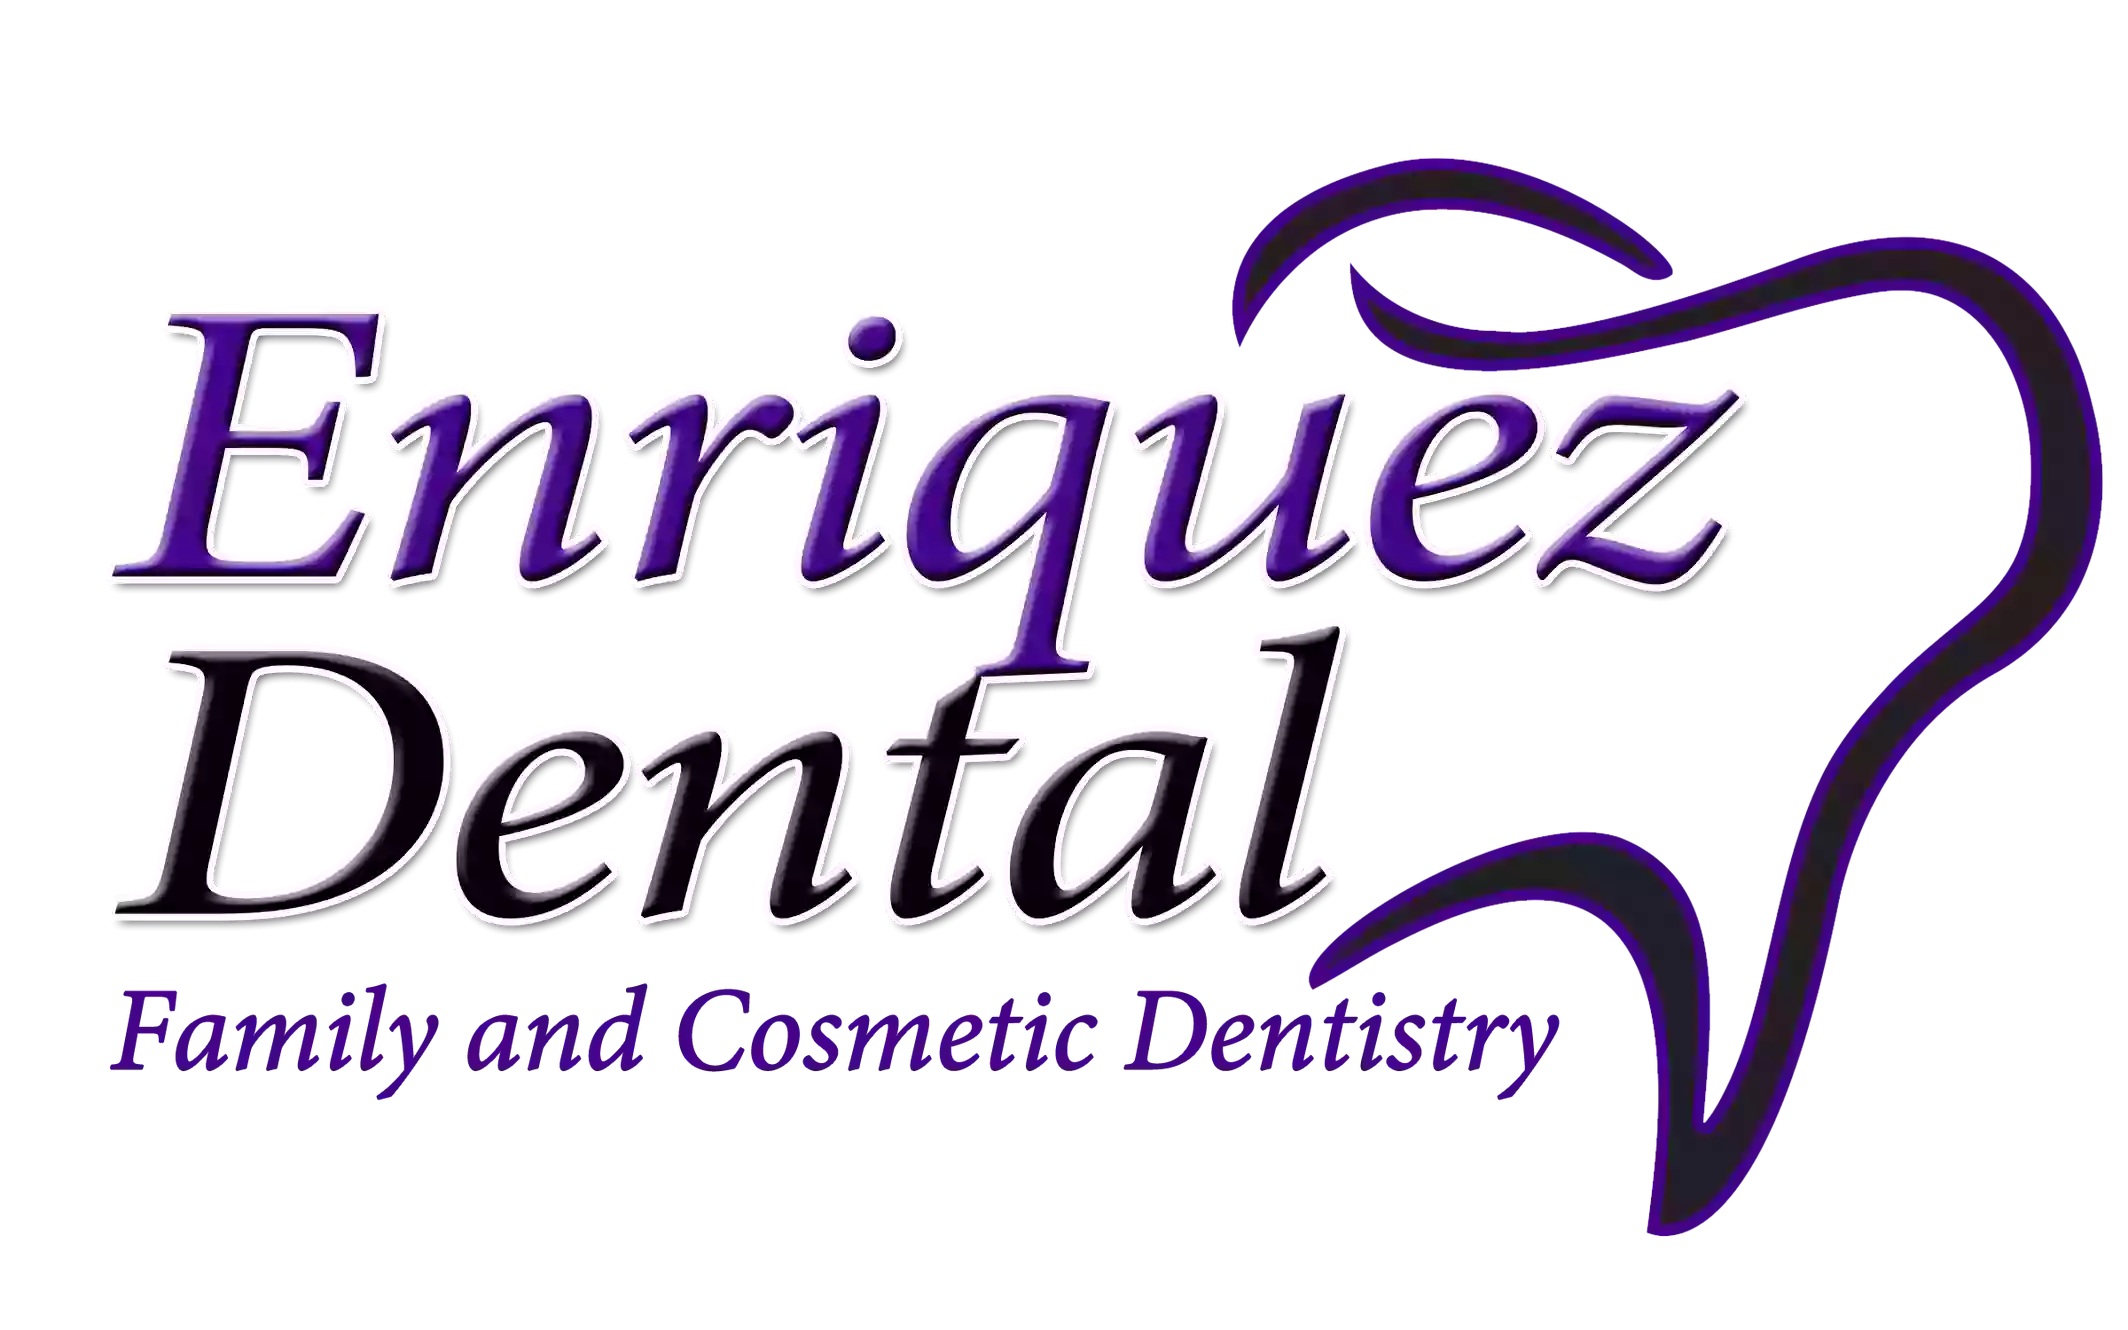 Enriquez Dental